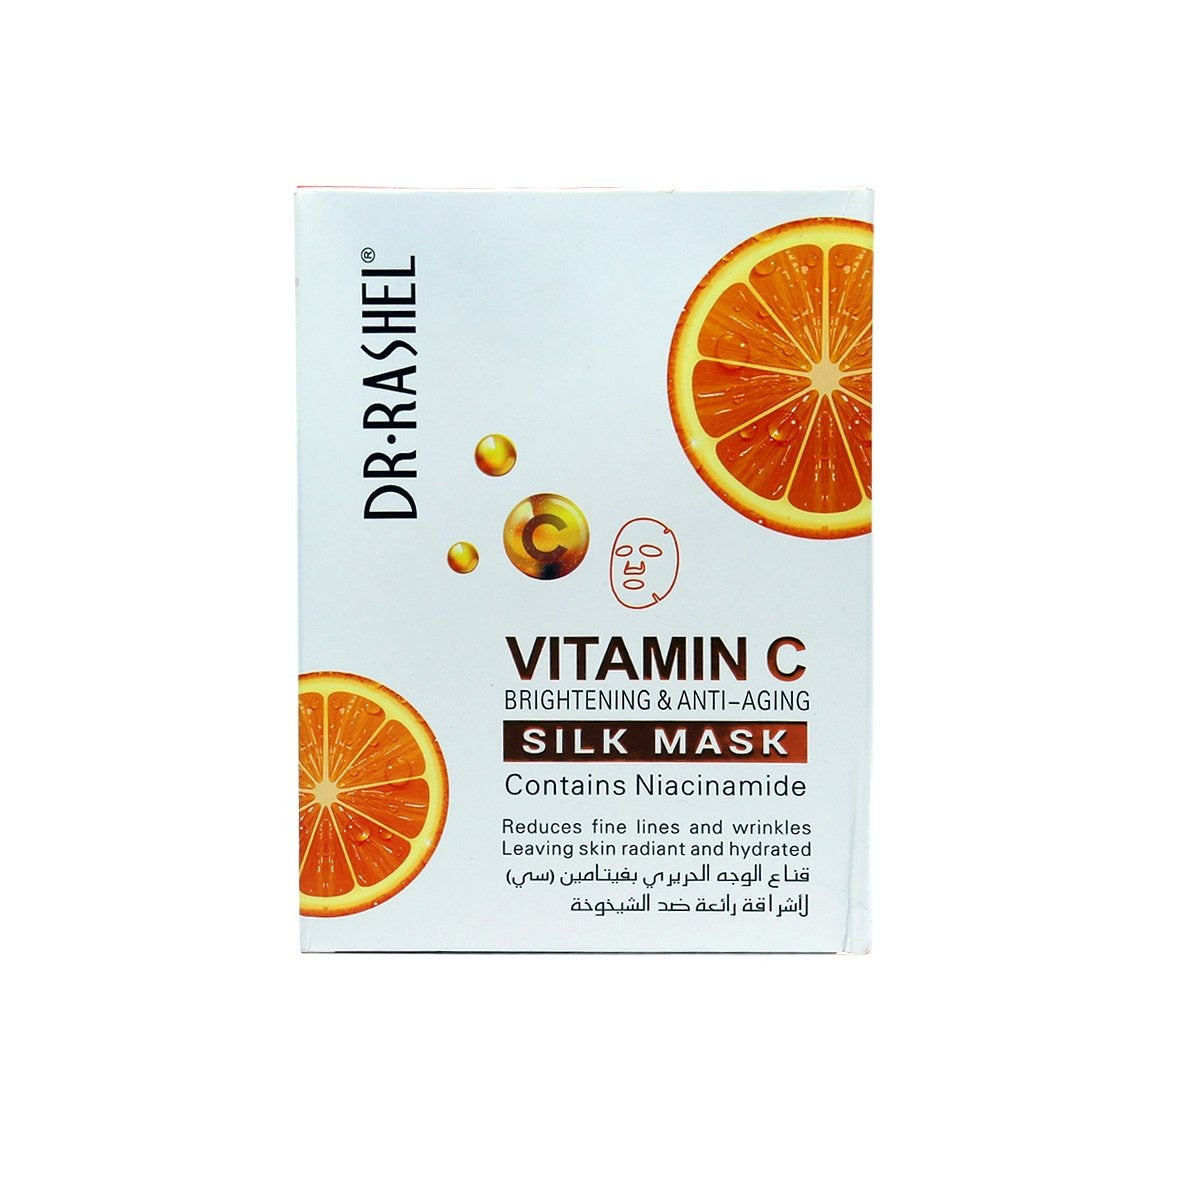 Dr Rashel Vitamin C Silk Mask Brightening & Anti Aging 28g freeshipping - lasertag.pk